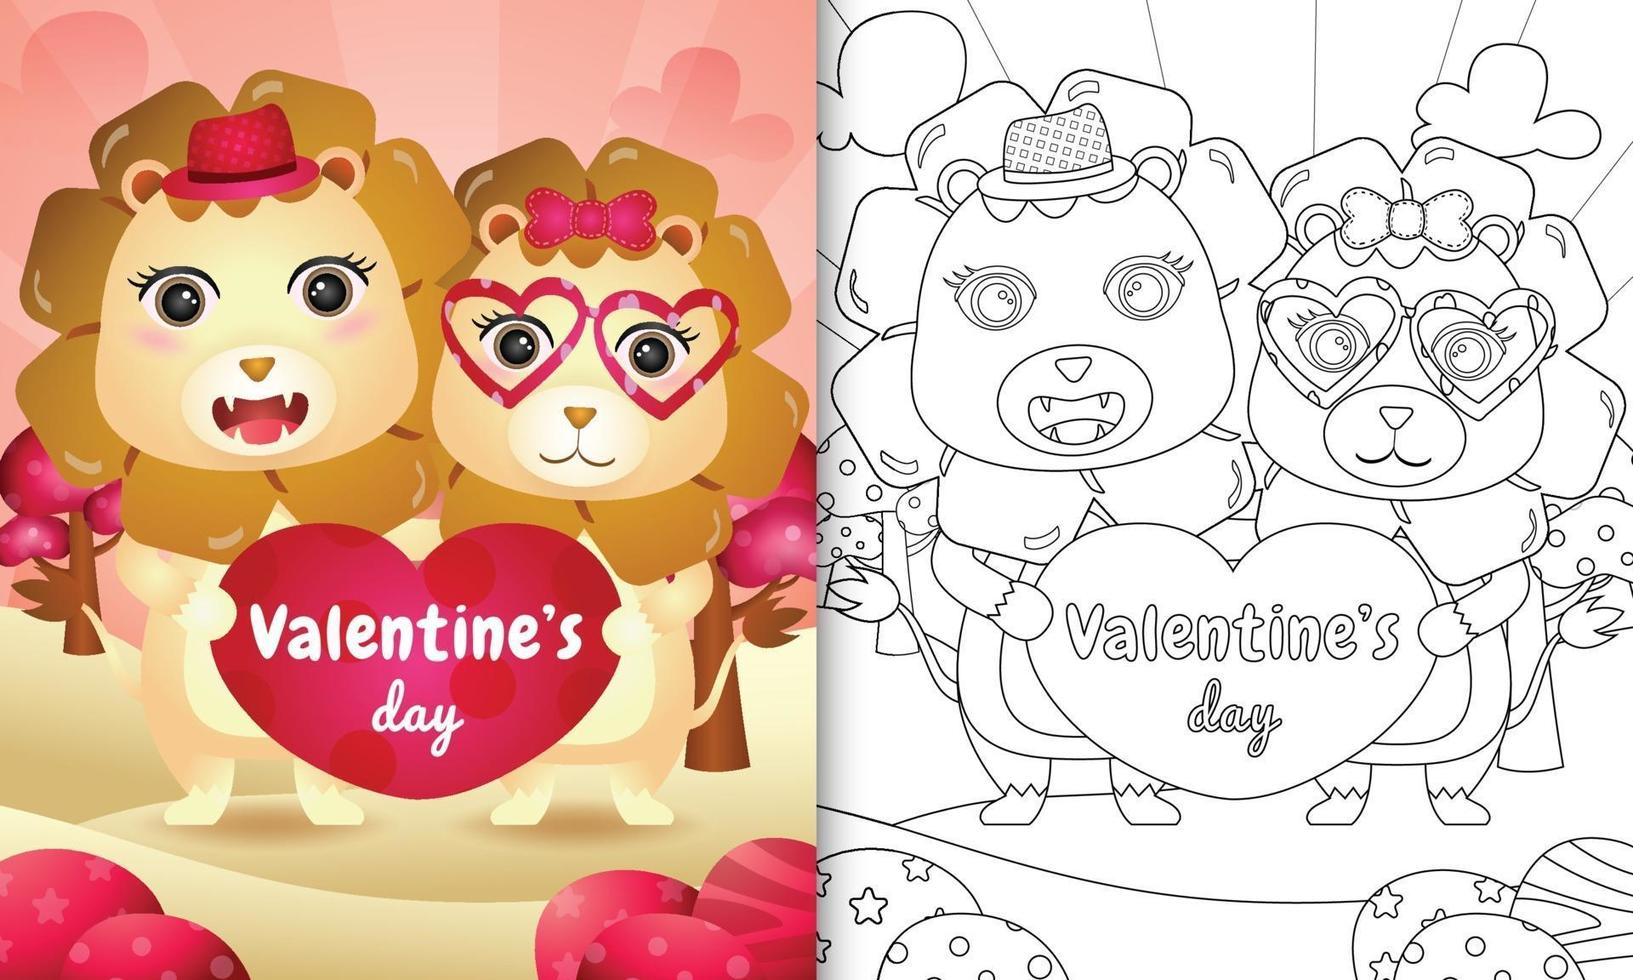 kleurboek voor kinderen met schattig valentijnsdag leeuwenpaar geïllustreerd vector